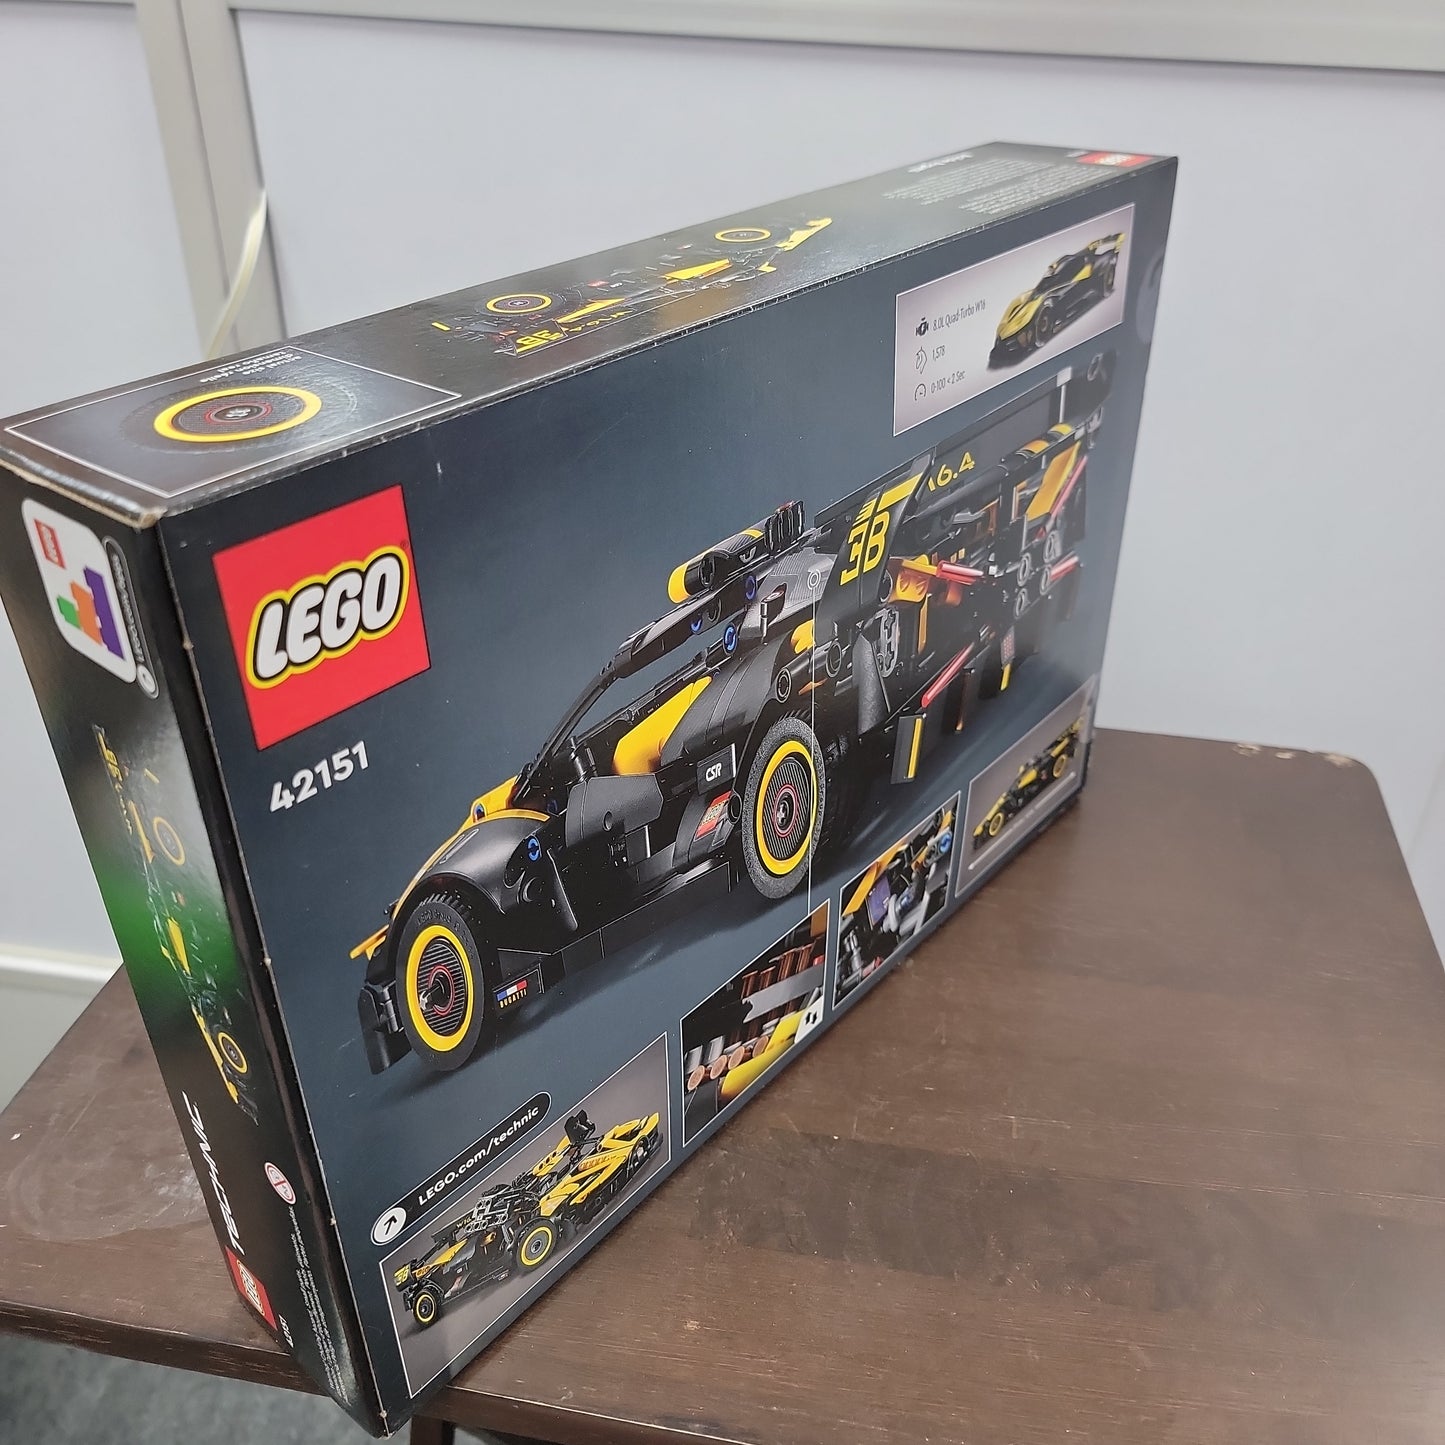 Bugatti Bolide Lego Technic Set